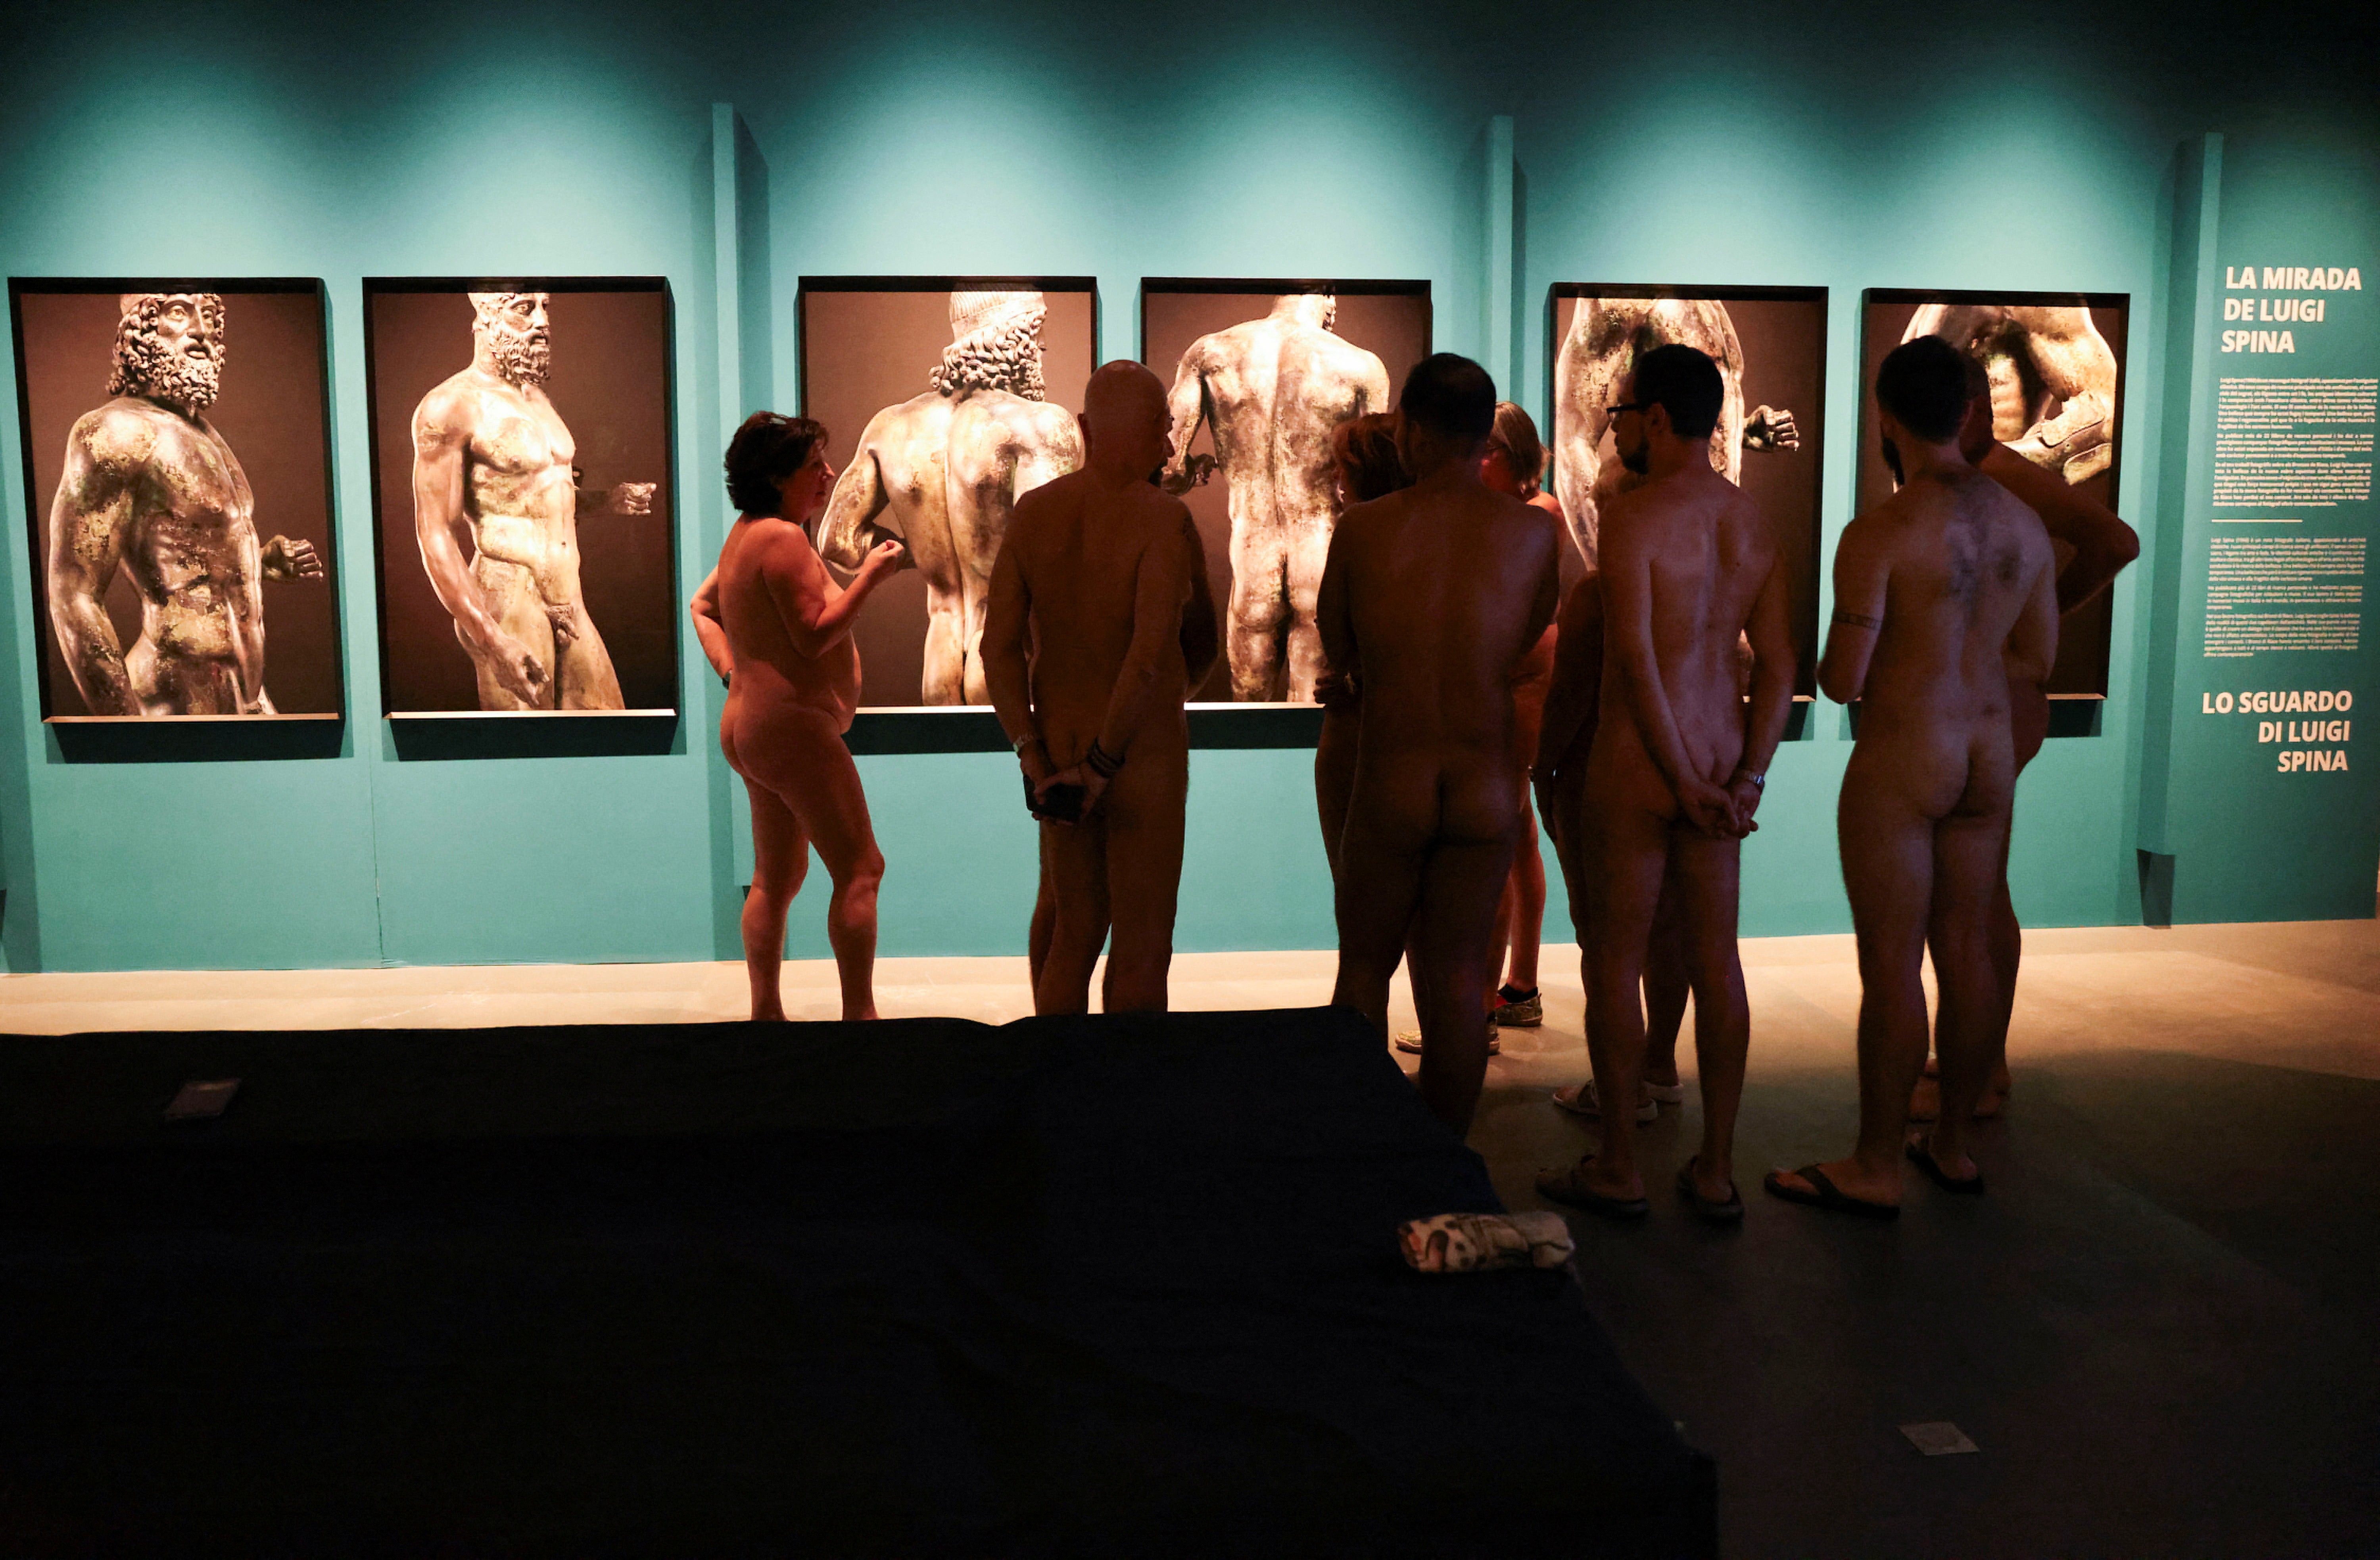 Barcelona museum throws open its doors to nudist visitors